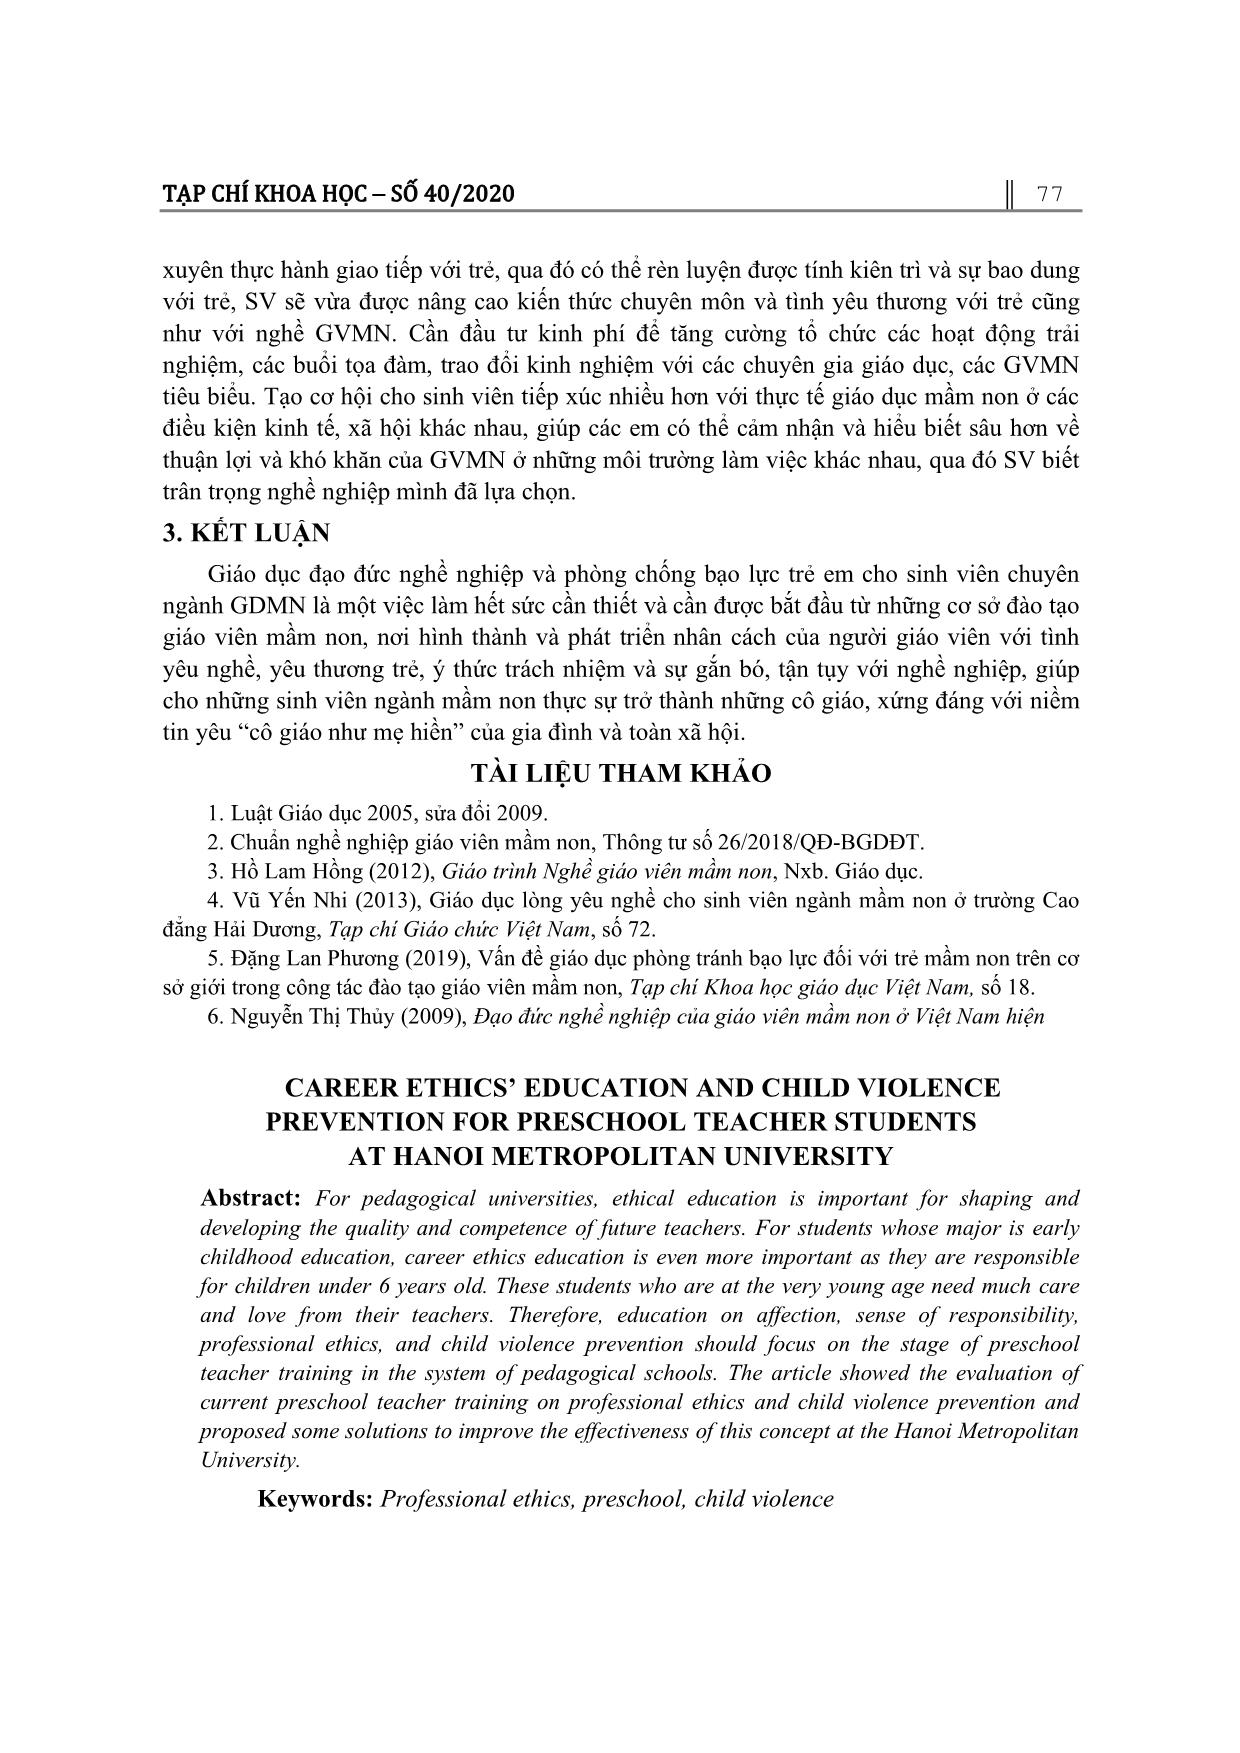 Giáo dục đạo đức nghề nghiệp và phòng chống bạo lực trẻ em cho sinh viên chuyên ngành giáo dục mầm non tại trường đại học thủ đô Hà Nội trang 8